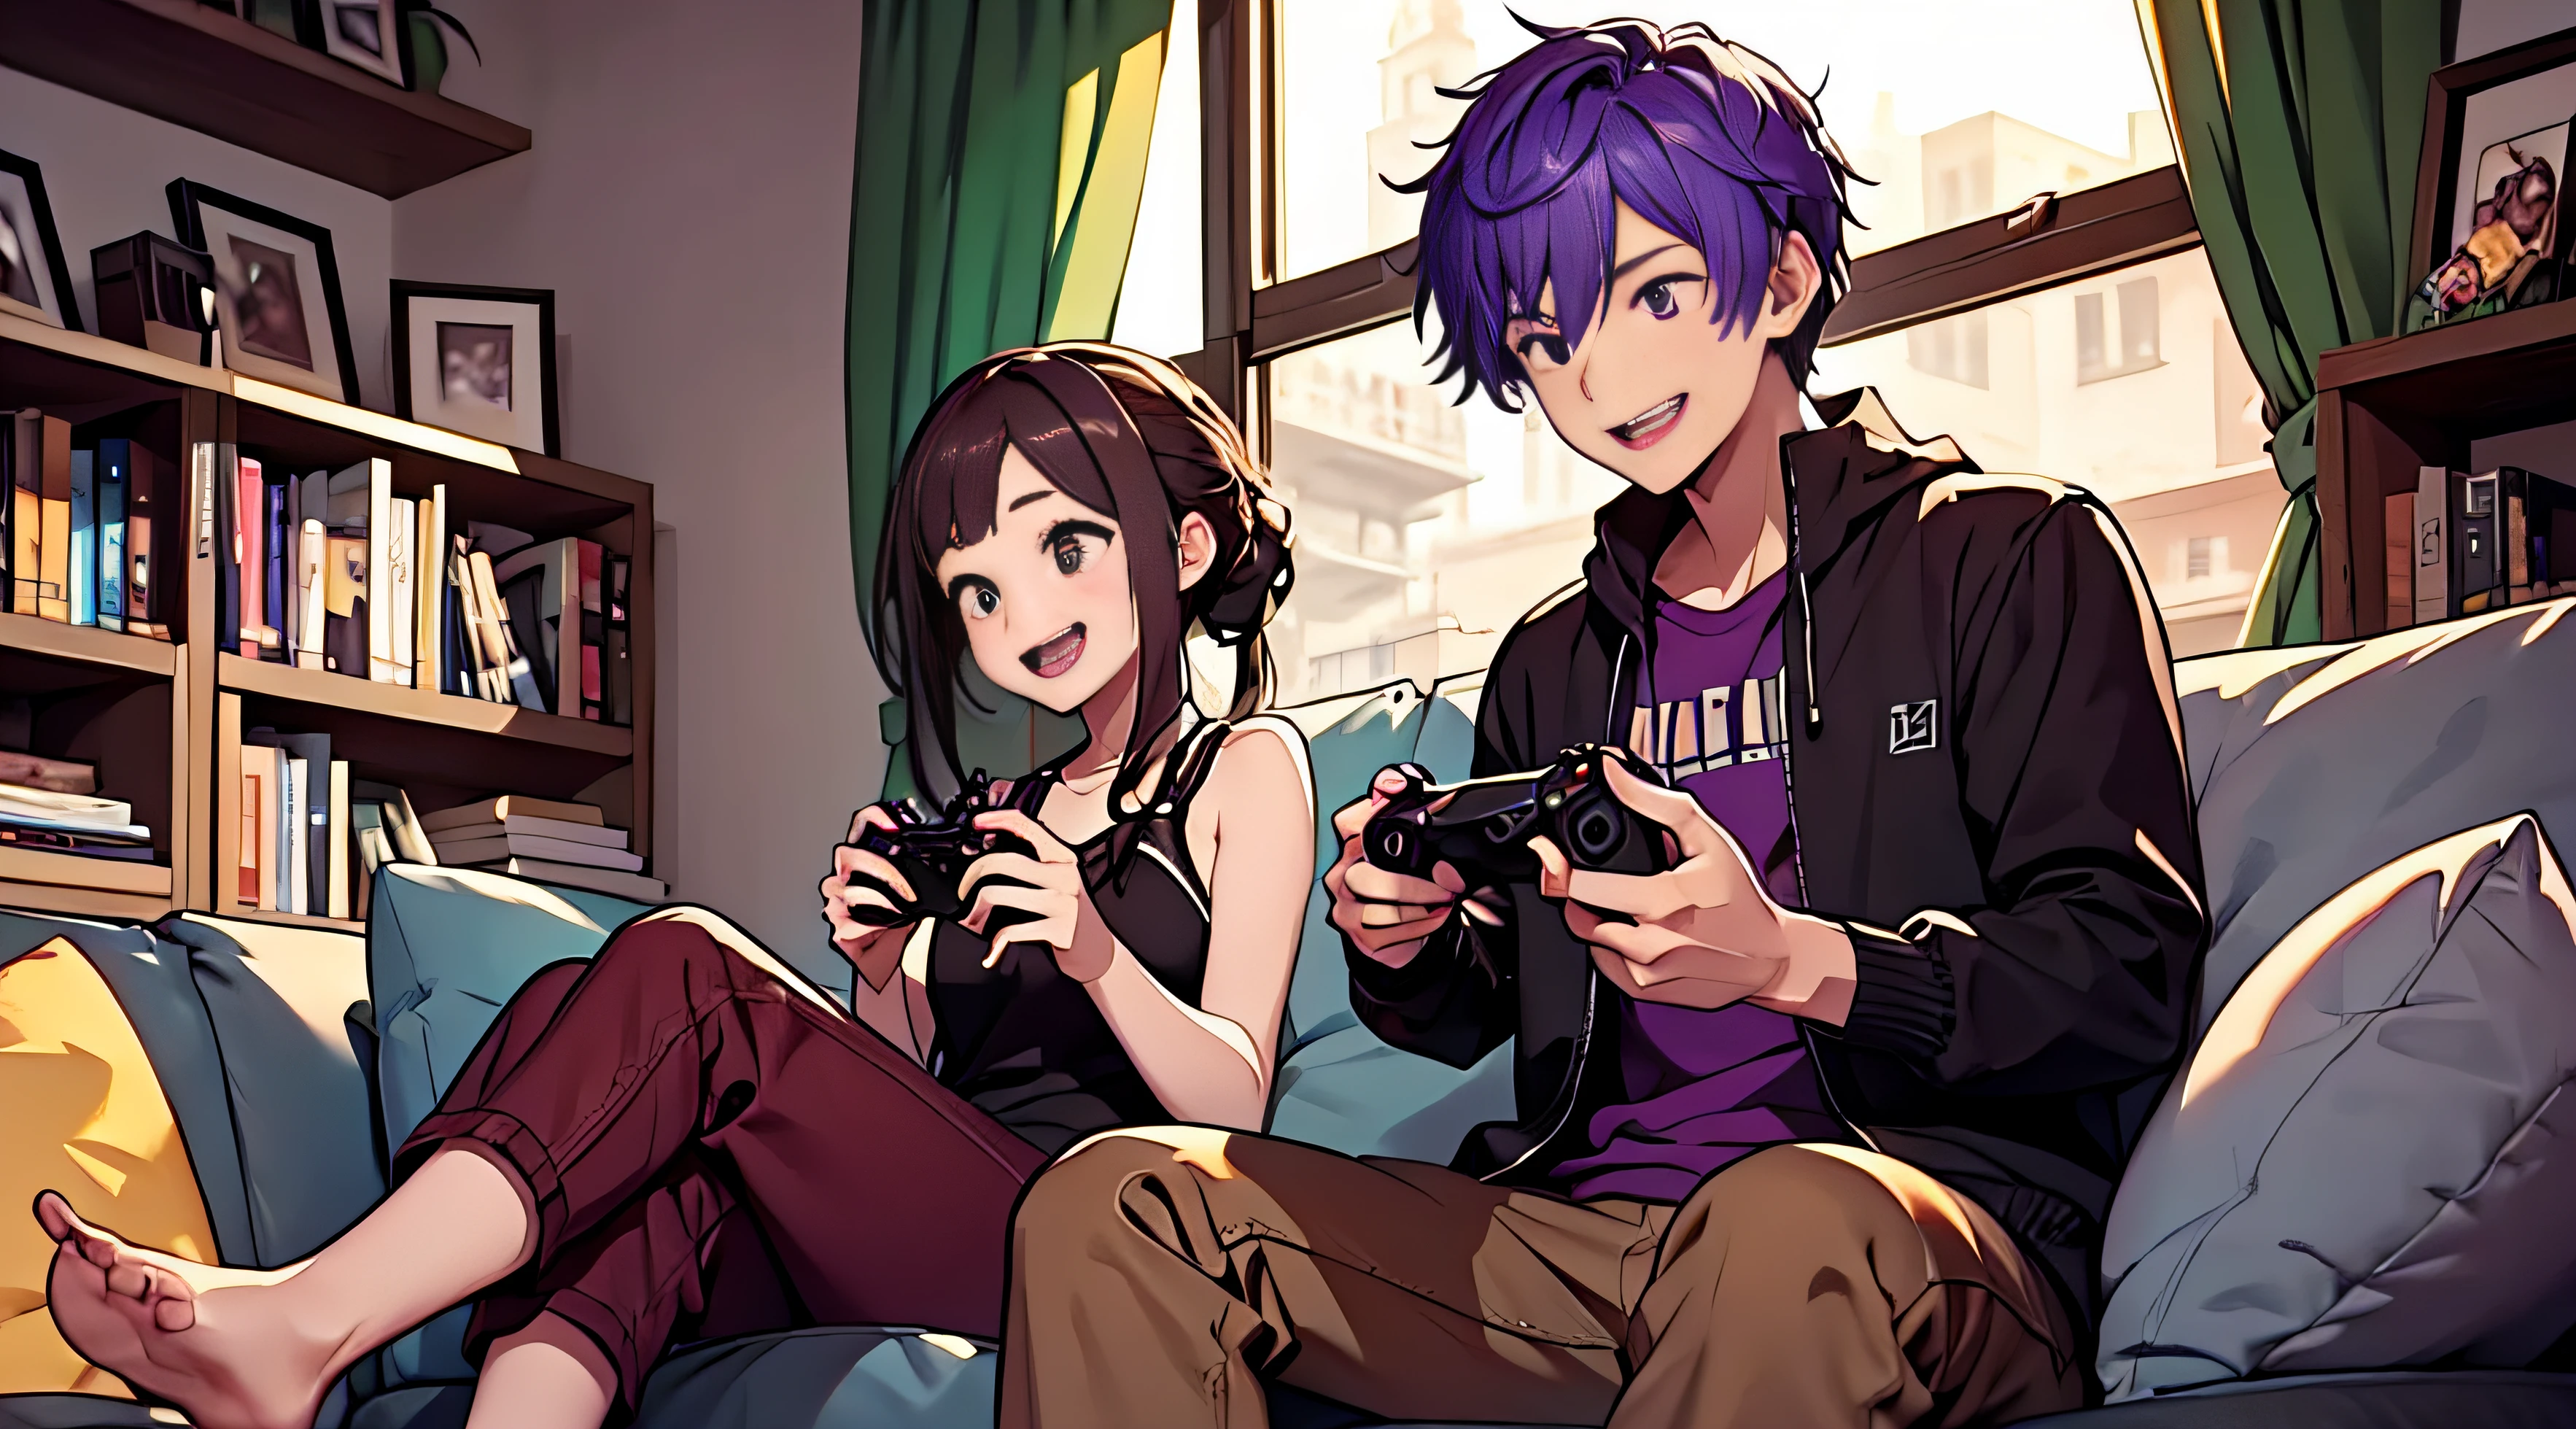 紫色头发的男孩和棕色头发的女孩、一对夫妇、大笑、一起玩电子游戏、沙发、数字录像机、放松氛围、高水平图像质量、令人愉快的、控制器、玩